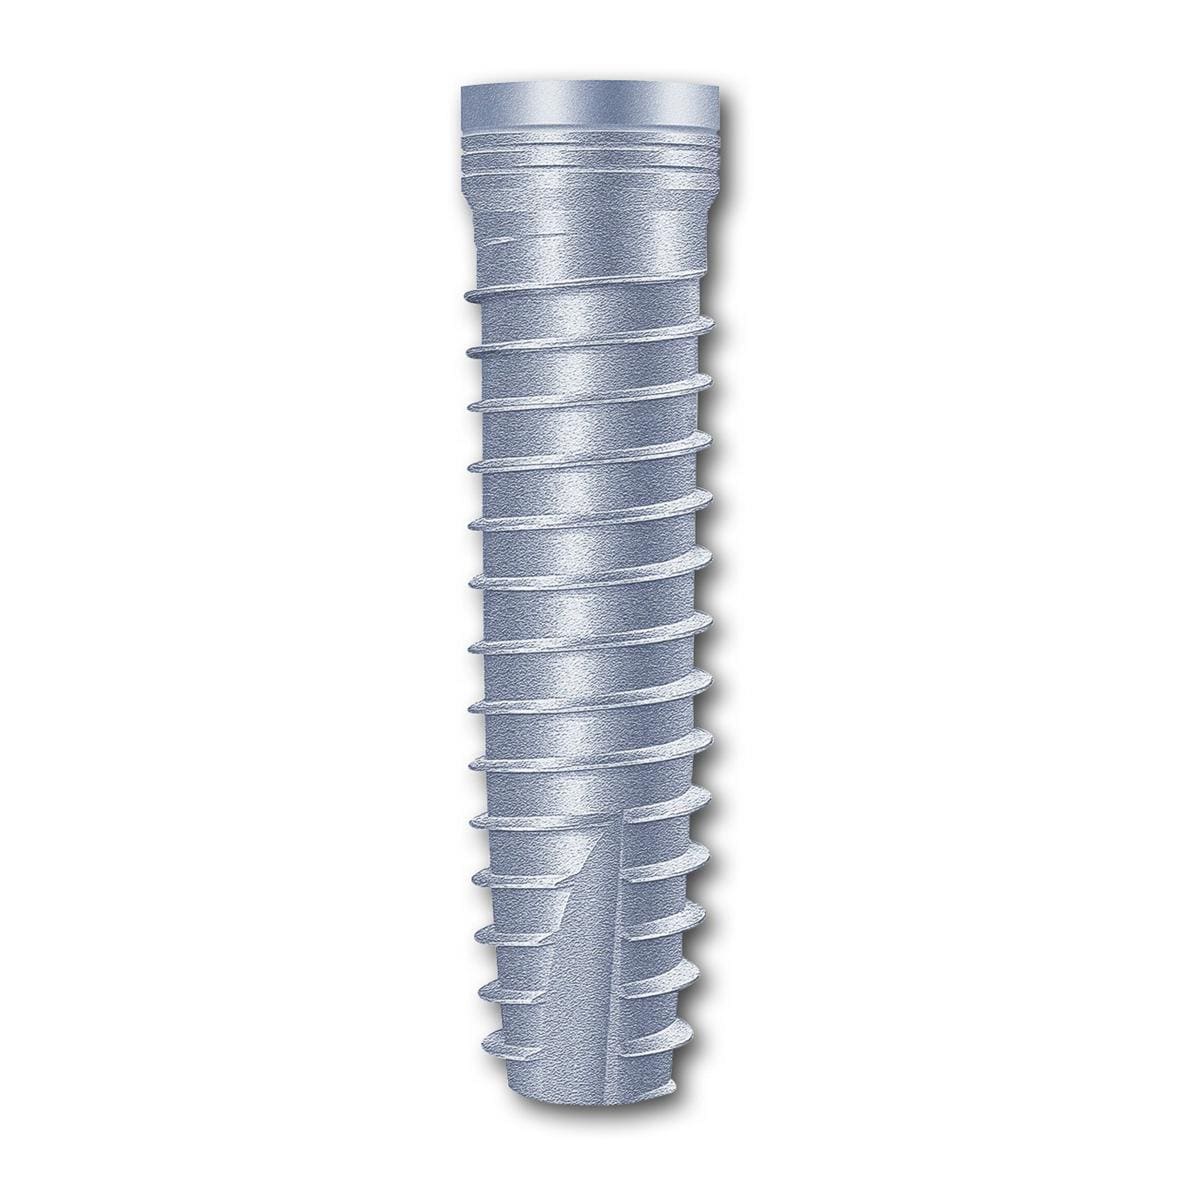 TL Implantat BONITex® Ø 3,4 mm - Länge 16 mm